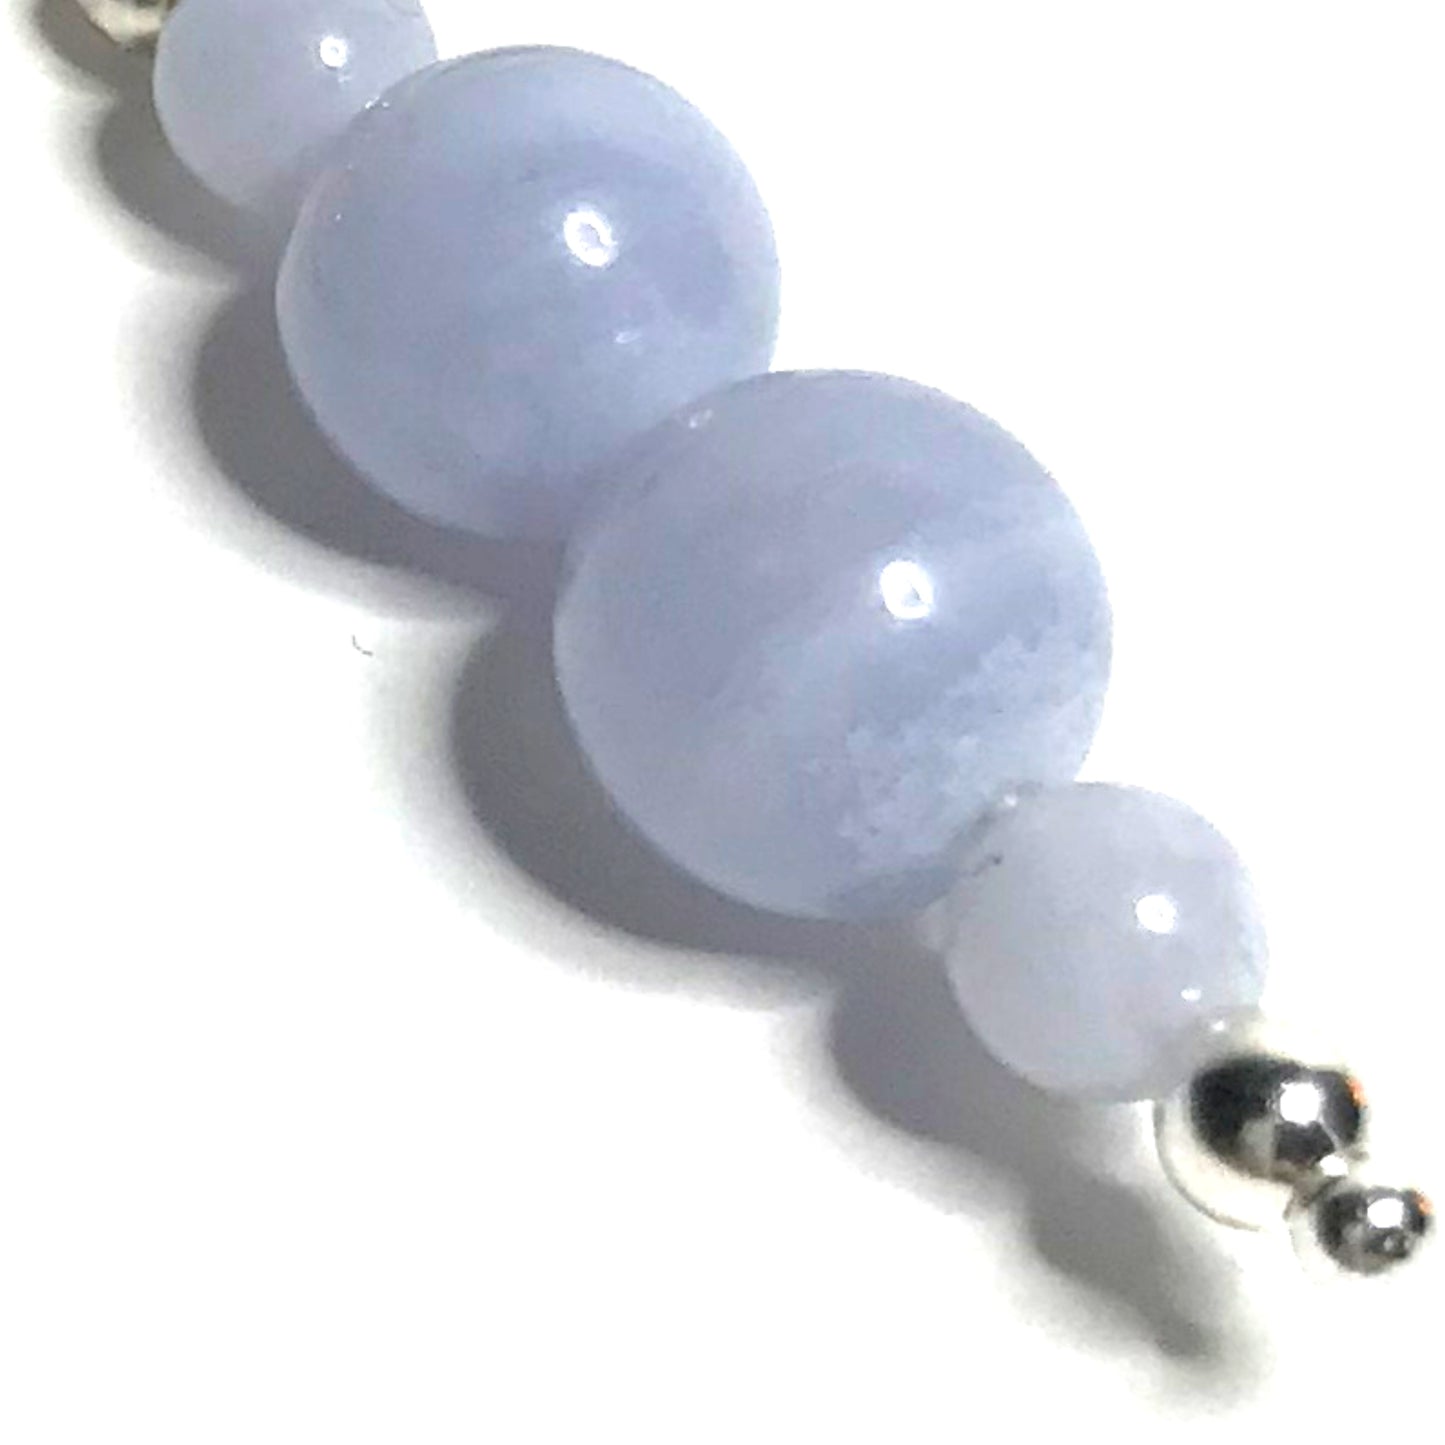 Blue Lace Agate Earrings